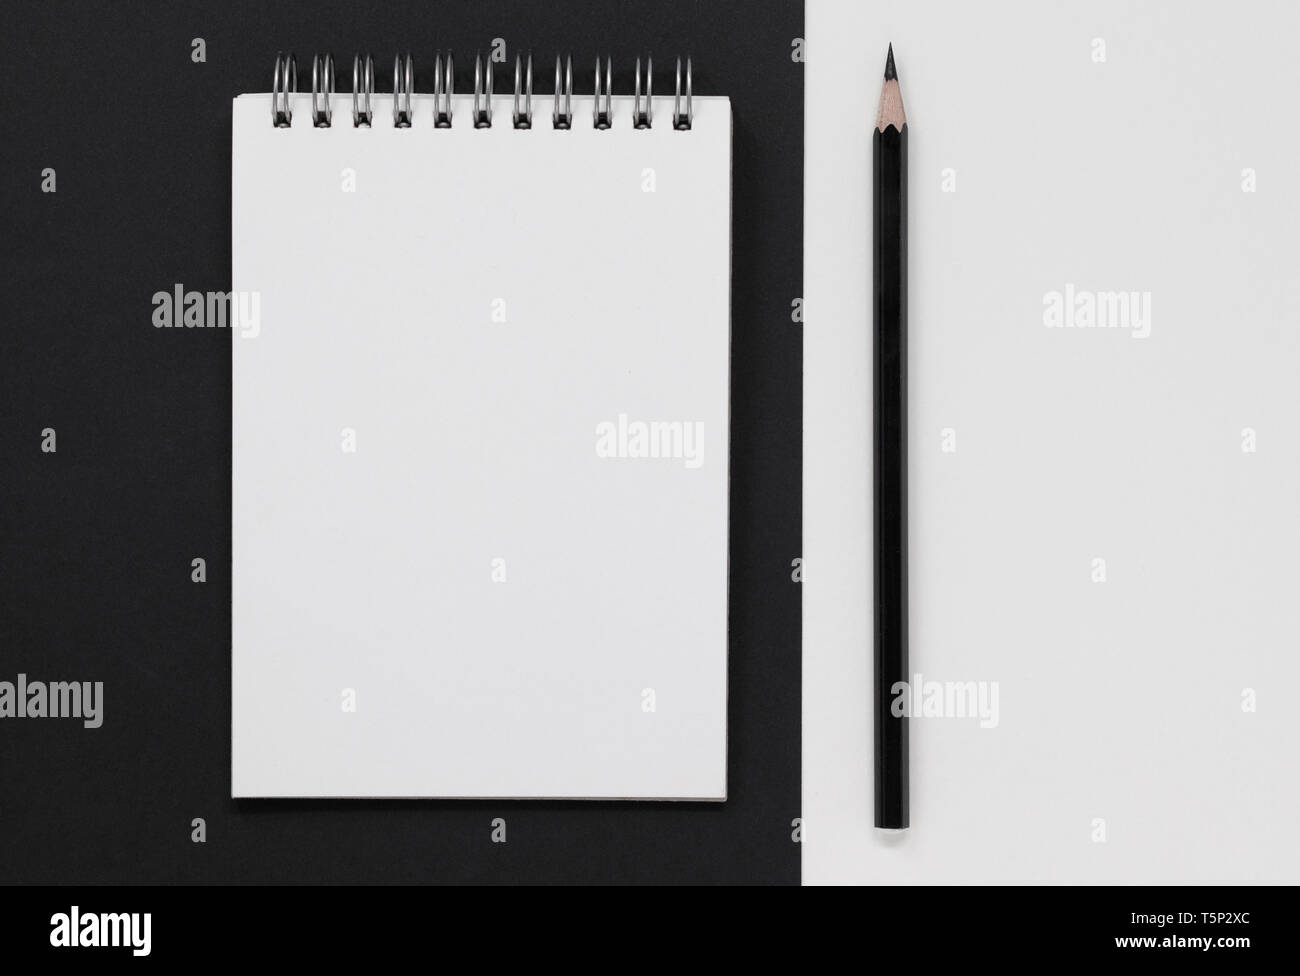 Blanc Blanc le bloc-notes et crayon noir, sur un fond noir et blanc. Mise à plat avec l'exemplaire de l'espace. Banque D'Images